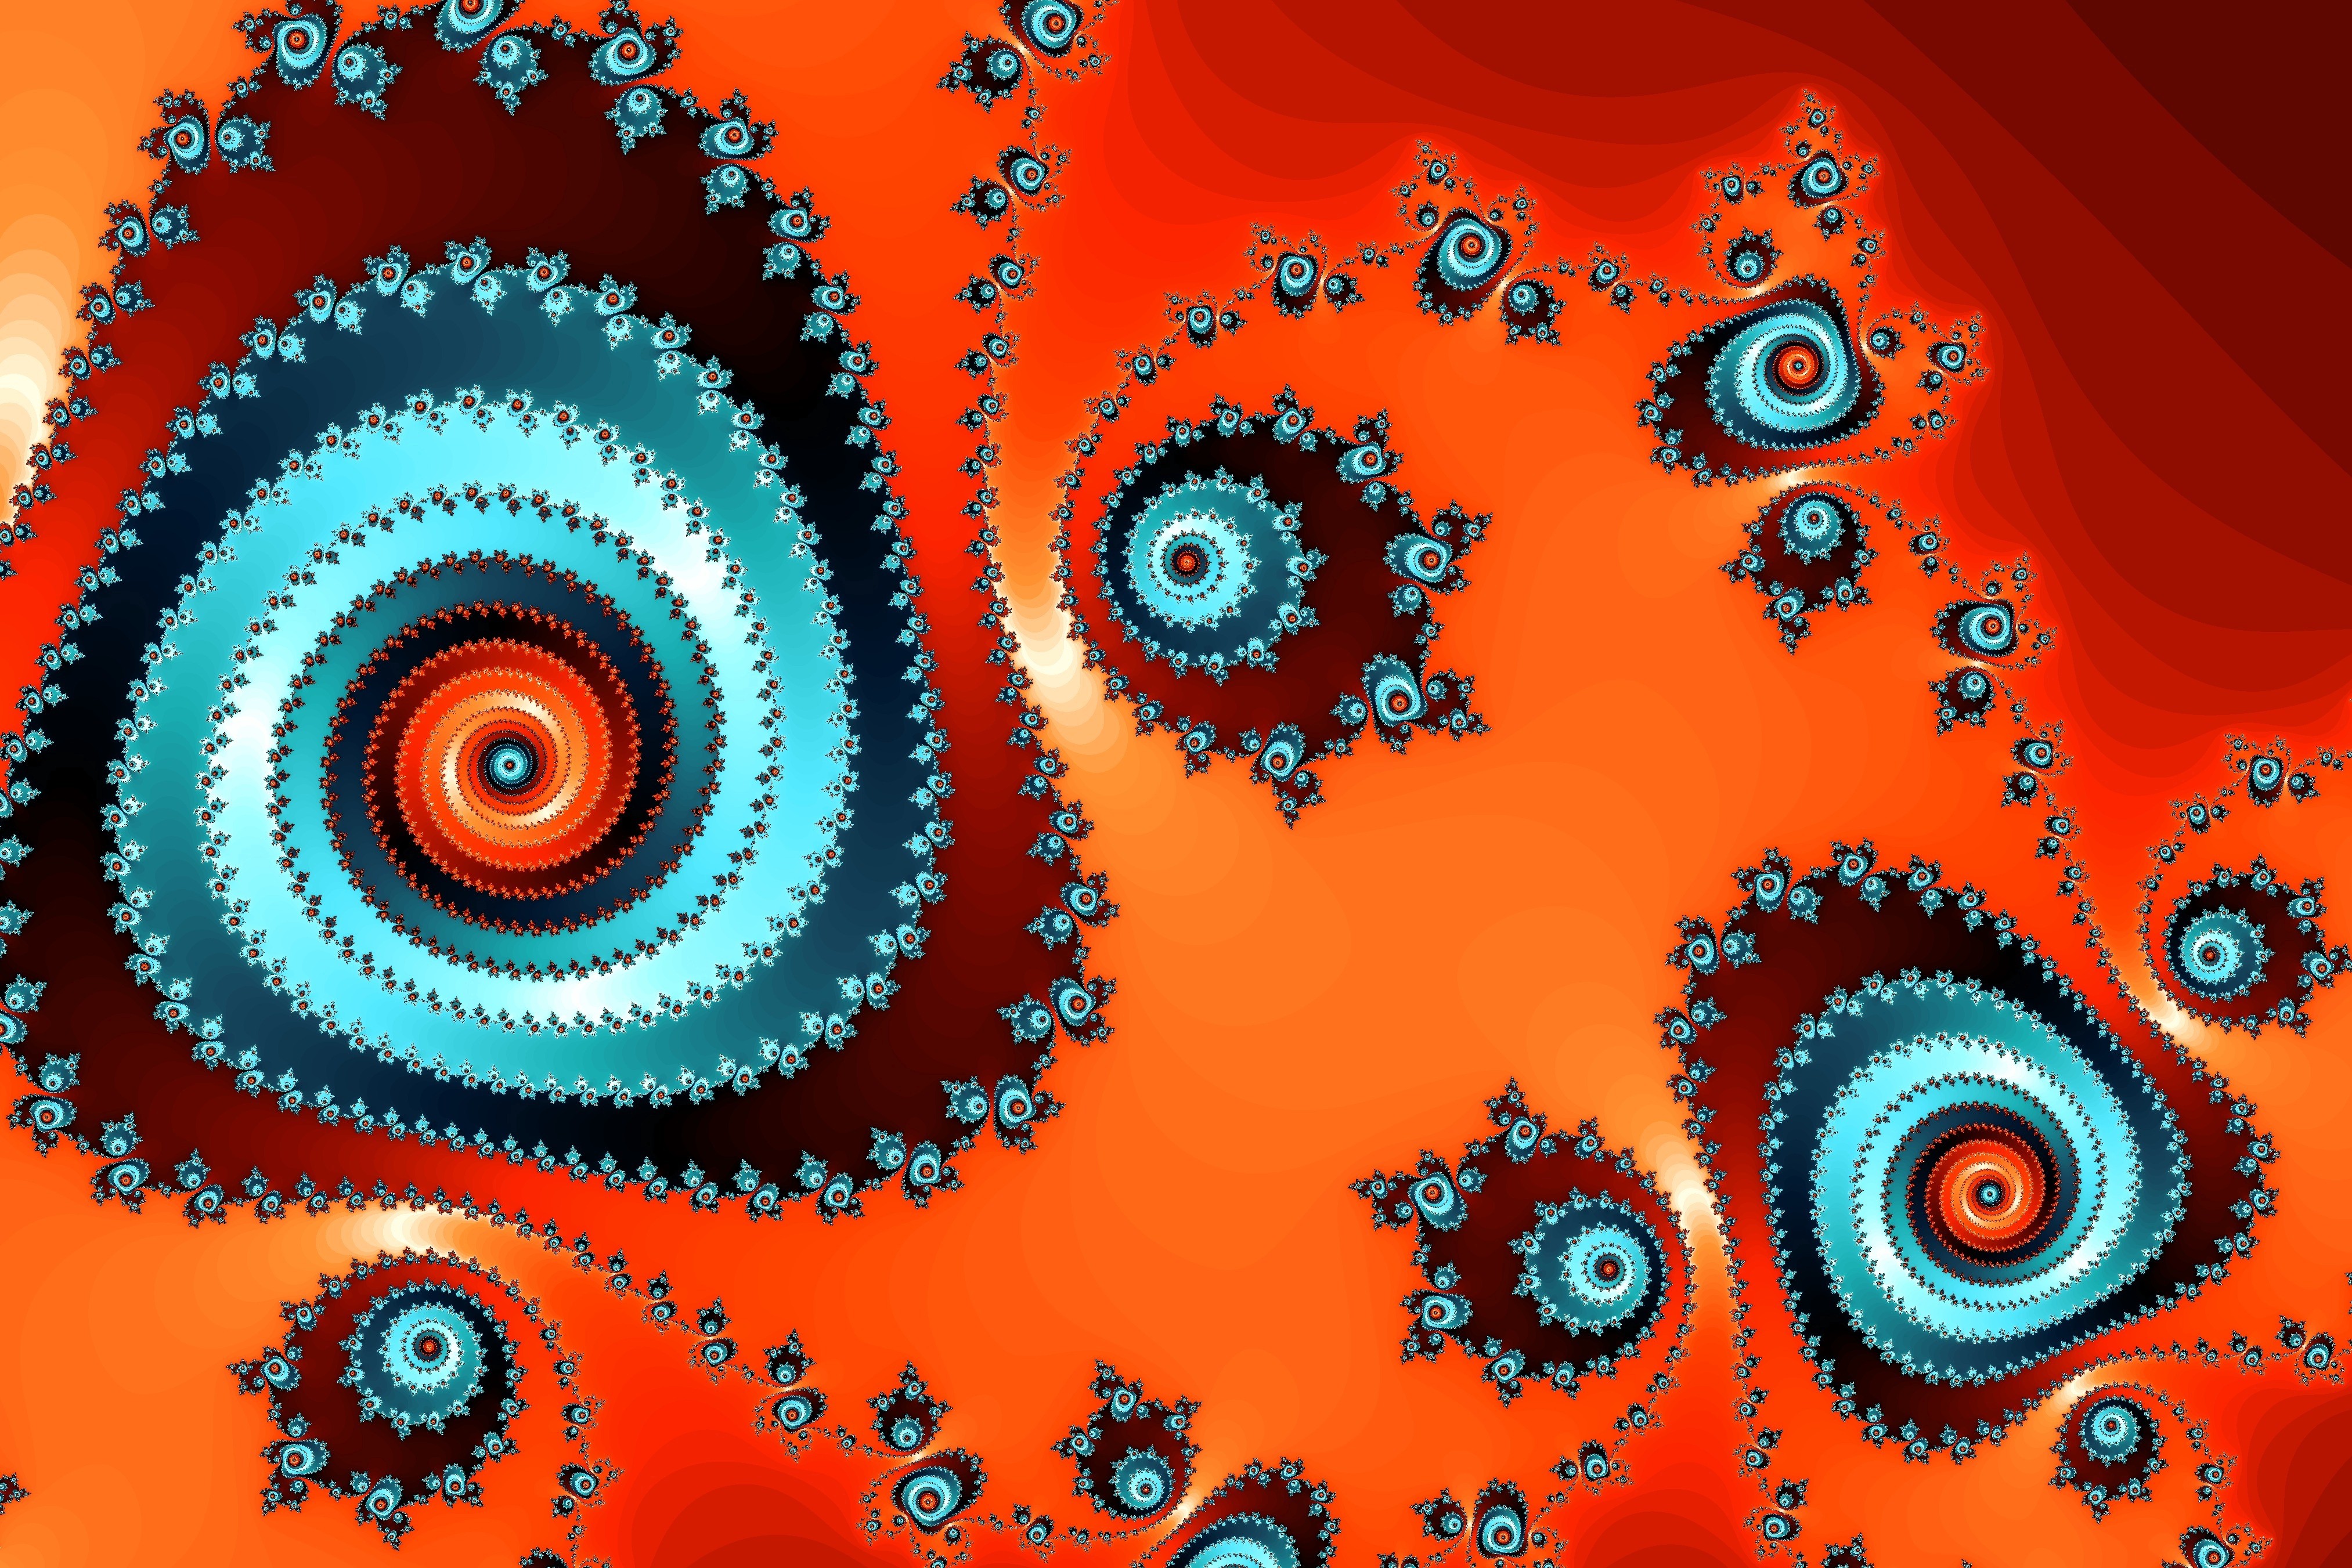 General 4052x2702 fractal shapes orange background digital art